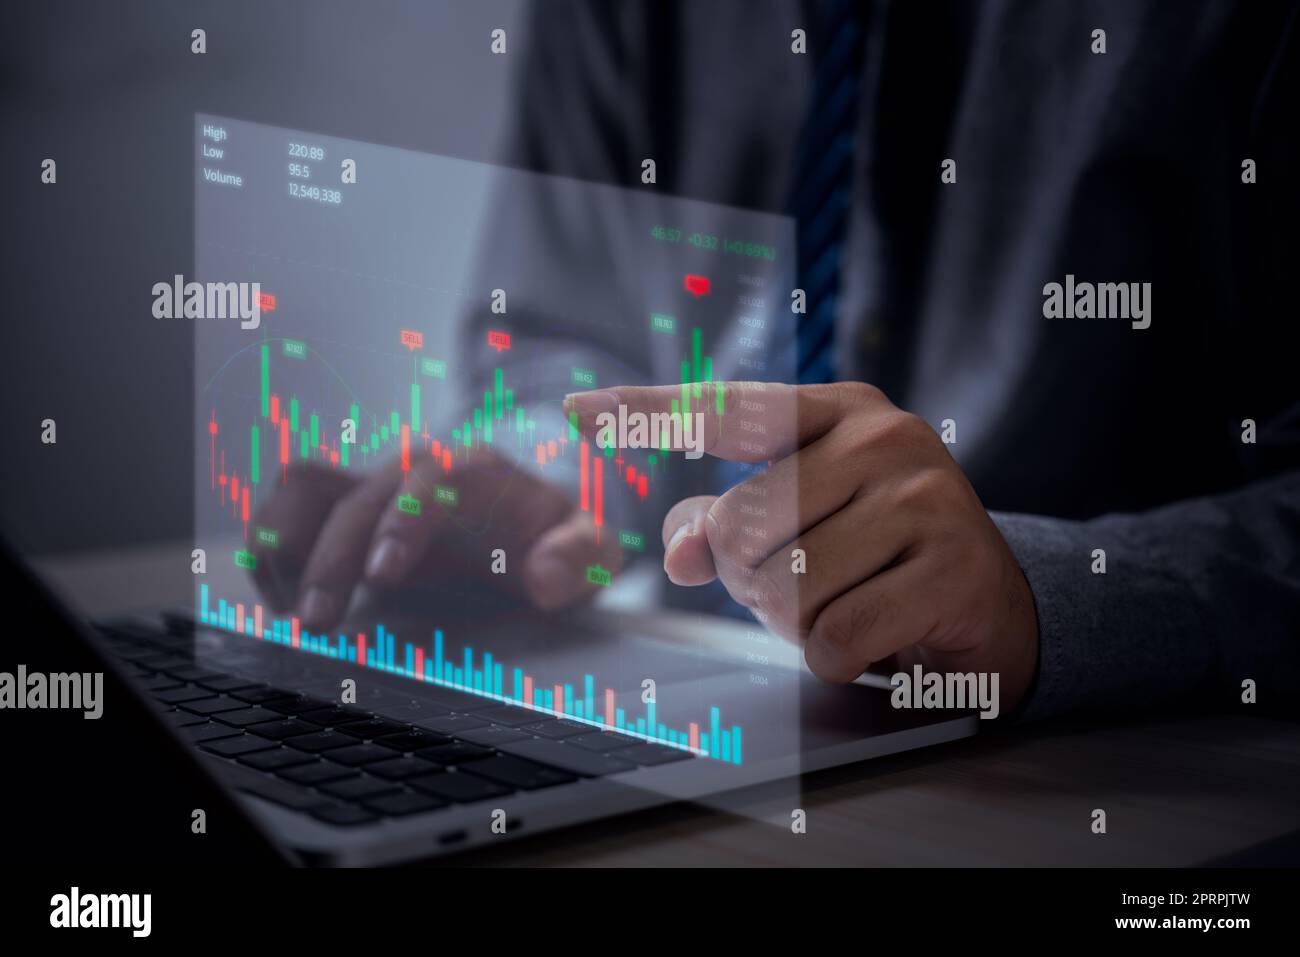 Concetto di investimento e tecnologia di finanza aziendale Fondi per investimenti in borsa e asset digitali Un uomo d'affari analizza i dati finanziari da un grafico di trading forex. Foto Stock